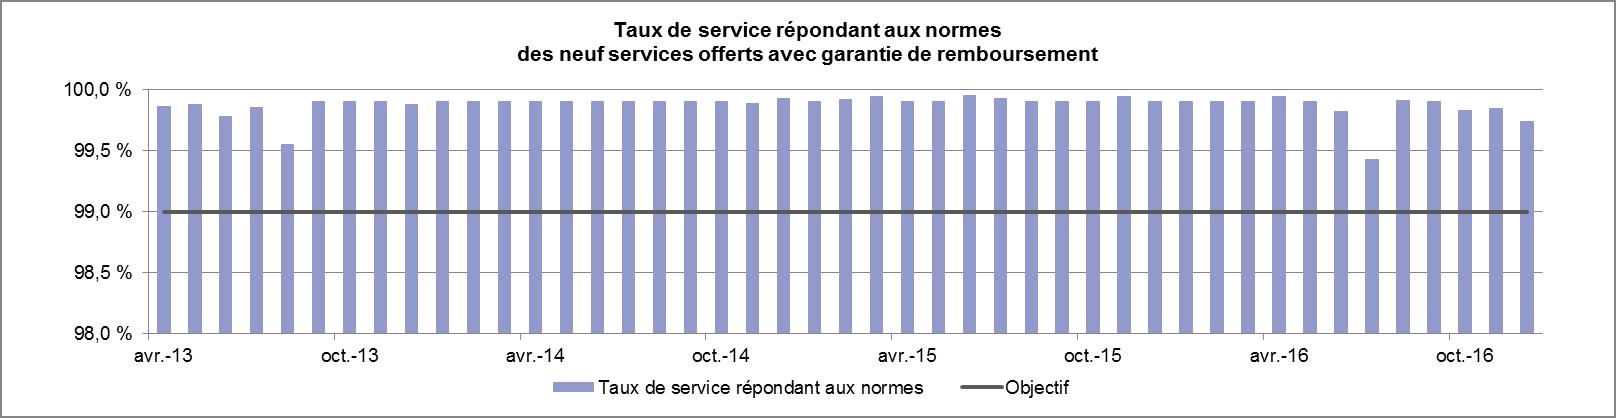 Graphique du taux de service répondant aux normes des neuf services offerts avec garantie de remboursement.